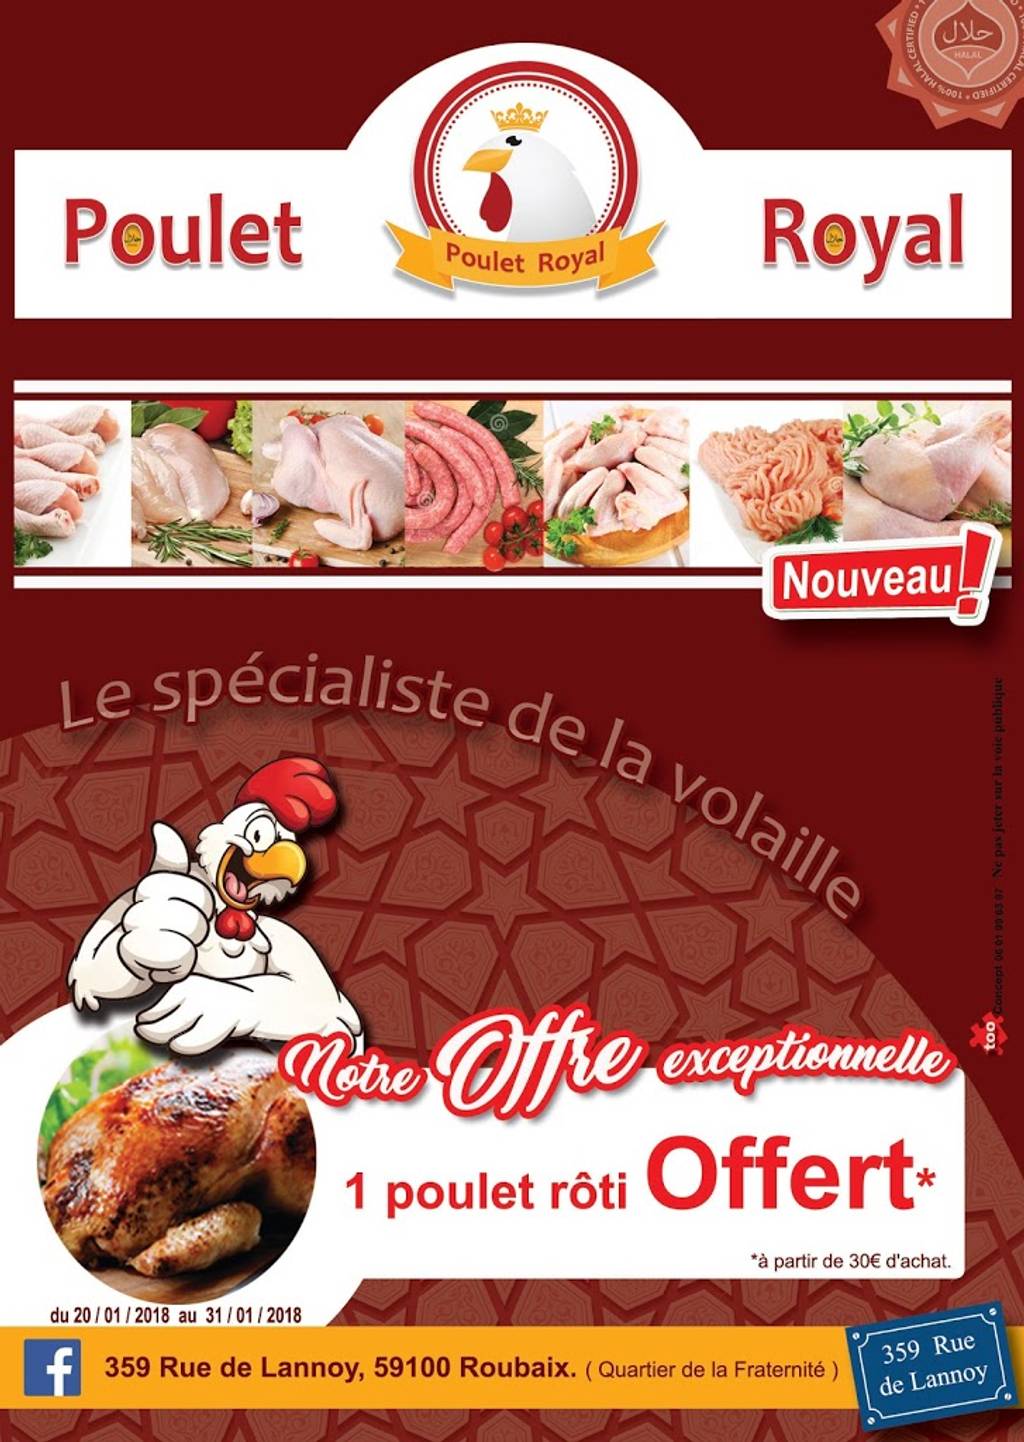 Poulet Royal Poulet Roubaix - Advertising Food group Food Flyer Cuisine